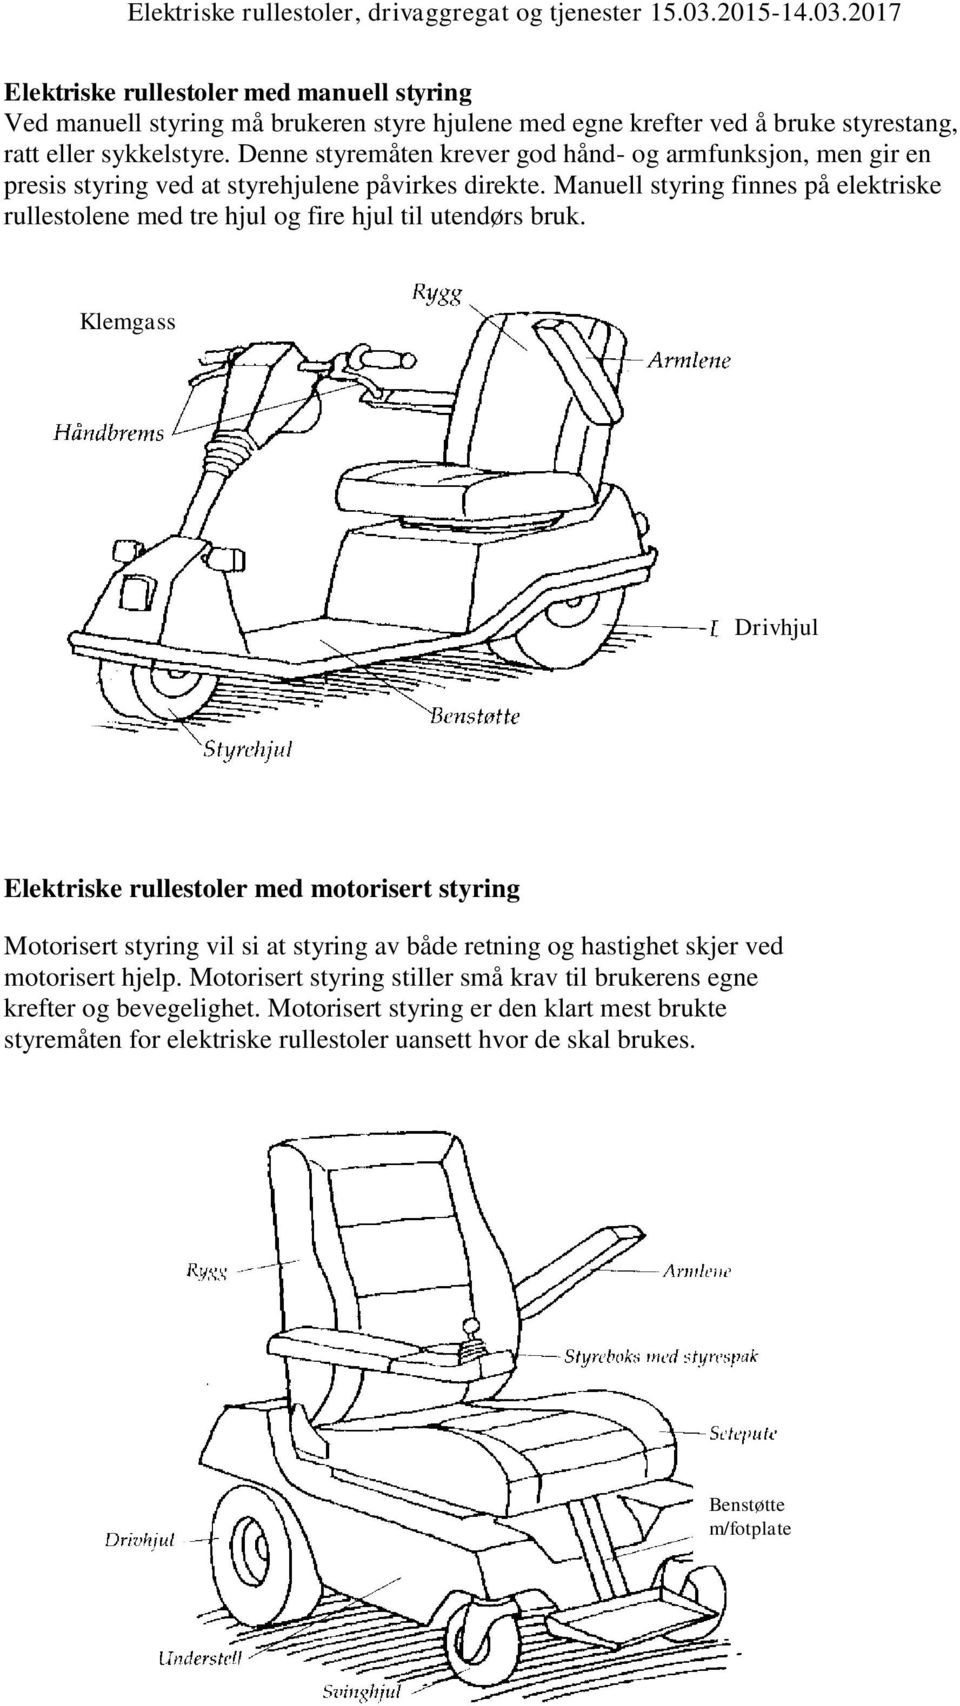 Manuell styring finnes på elektriske rullestolene med tre hjul og fire hjul til utendørs bruk.